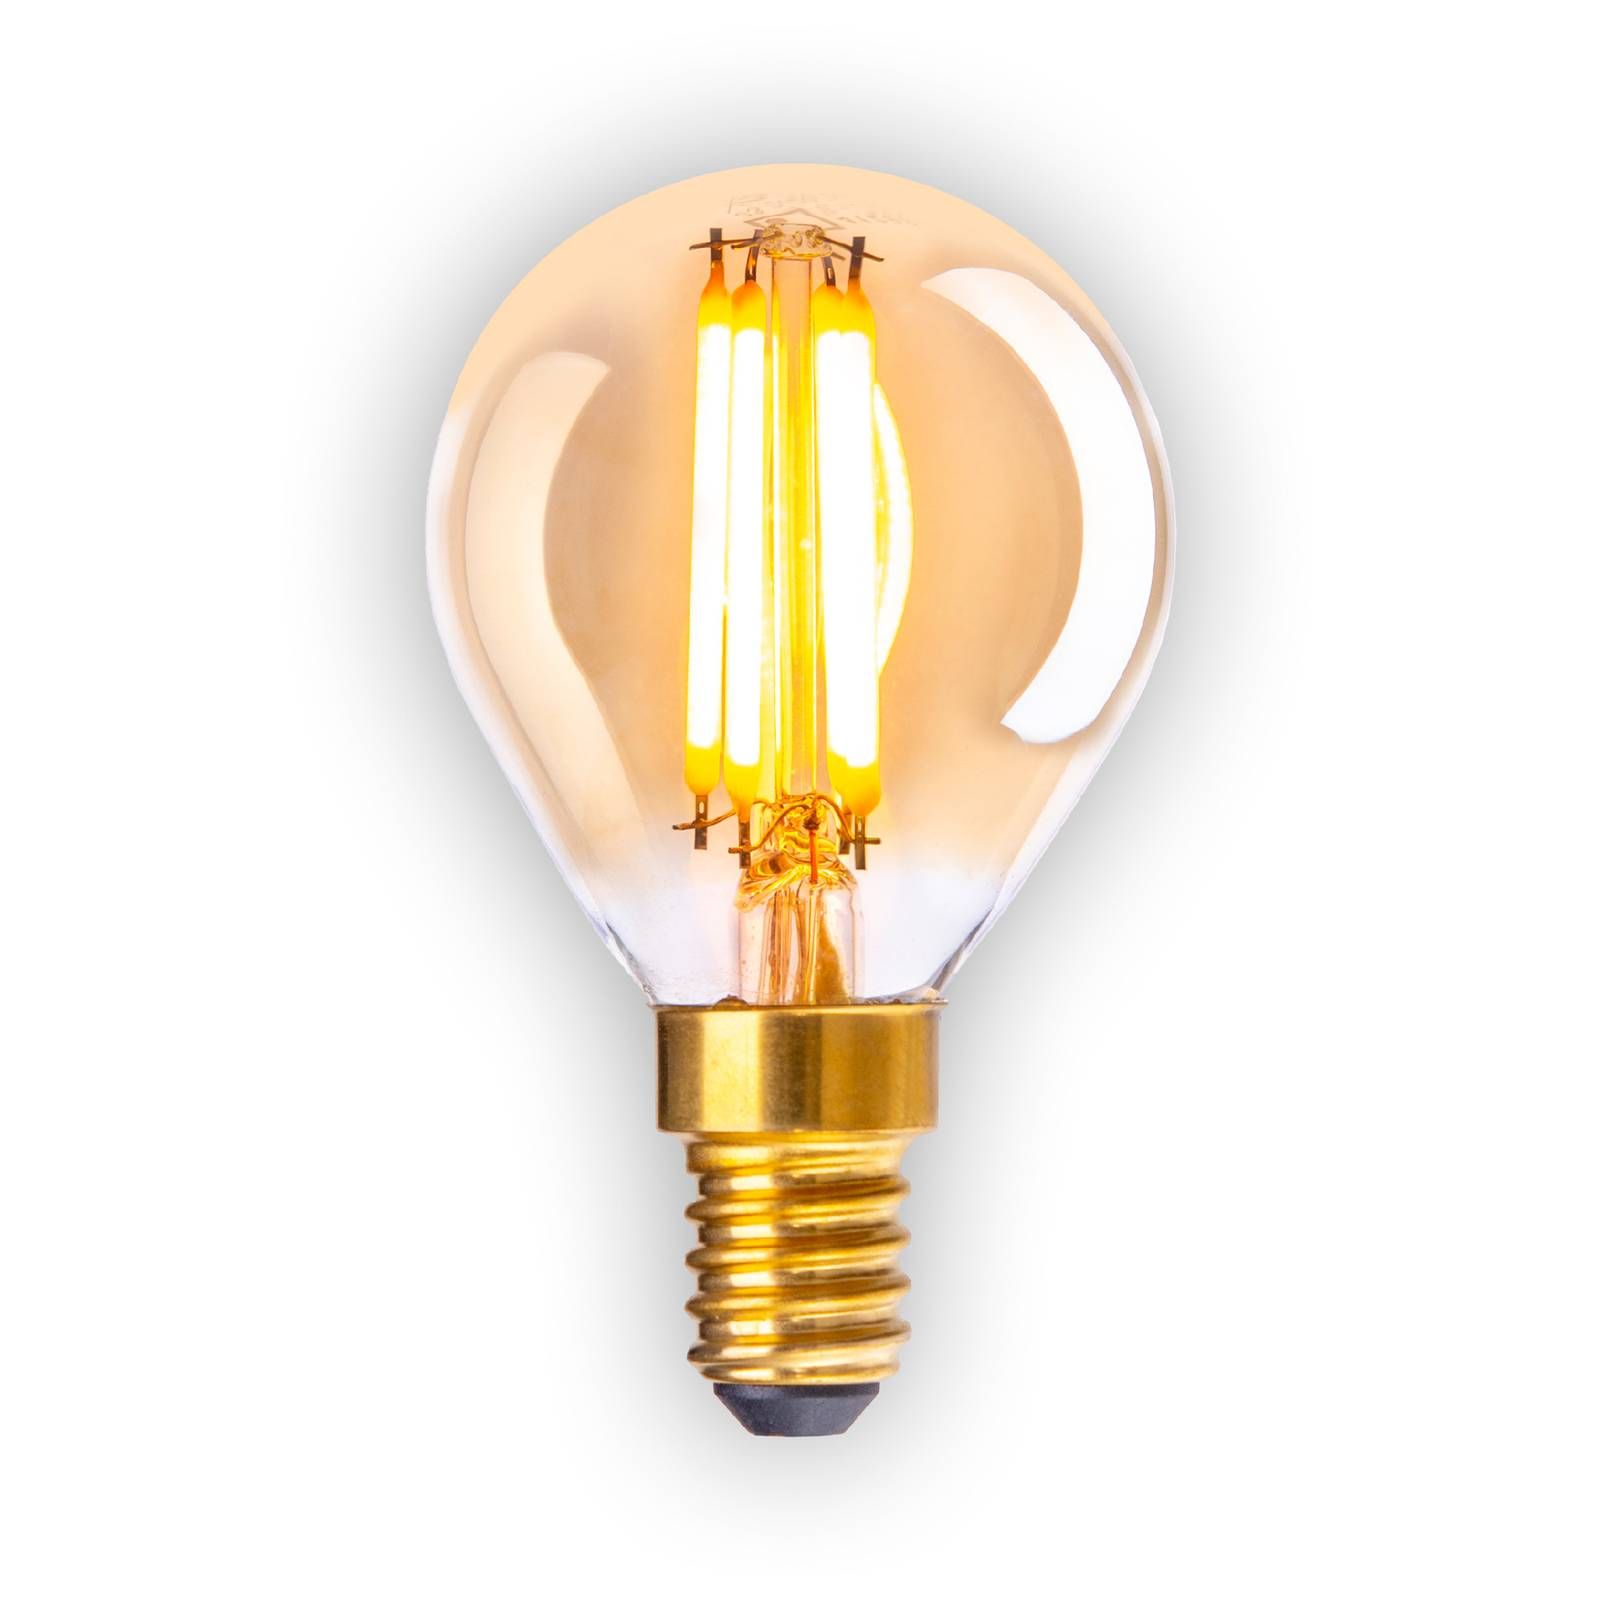 Näve LED žiarovka E14 3, 9W 313lm teplá biela stmiev 5ks, kov, sklo, E14, 3.9W, Energialuokka: G, P: 7.8 cm